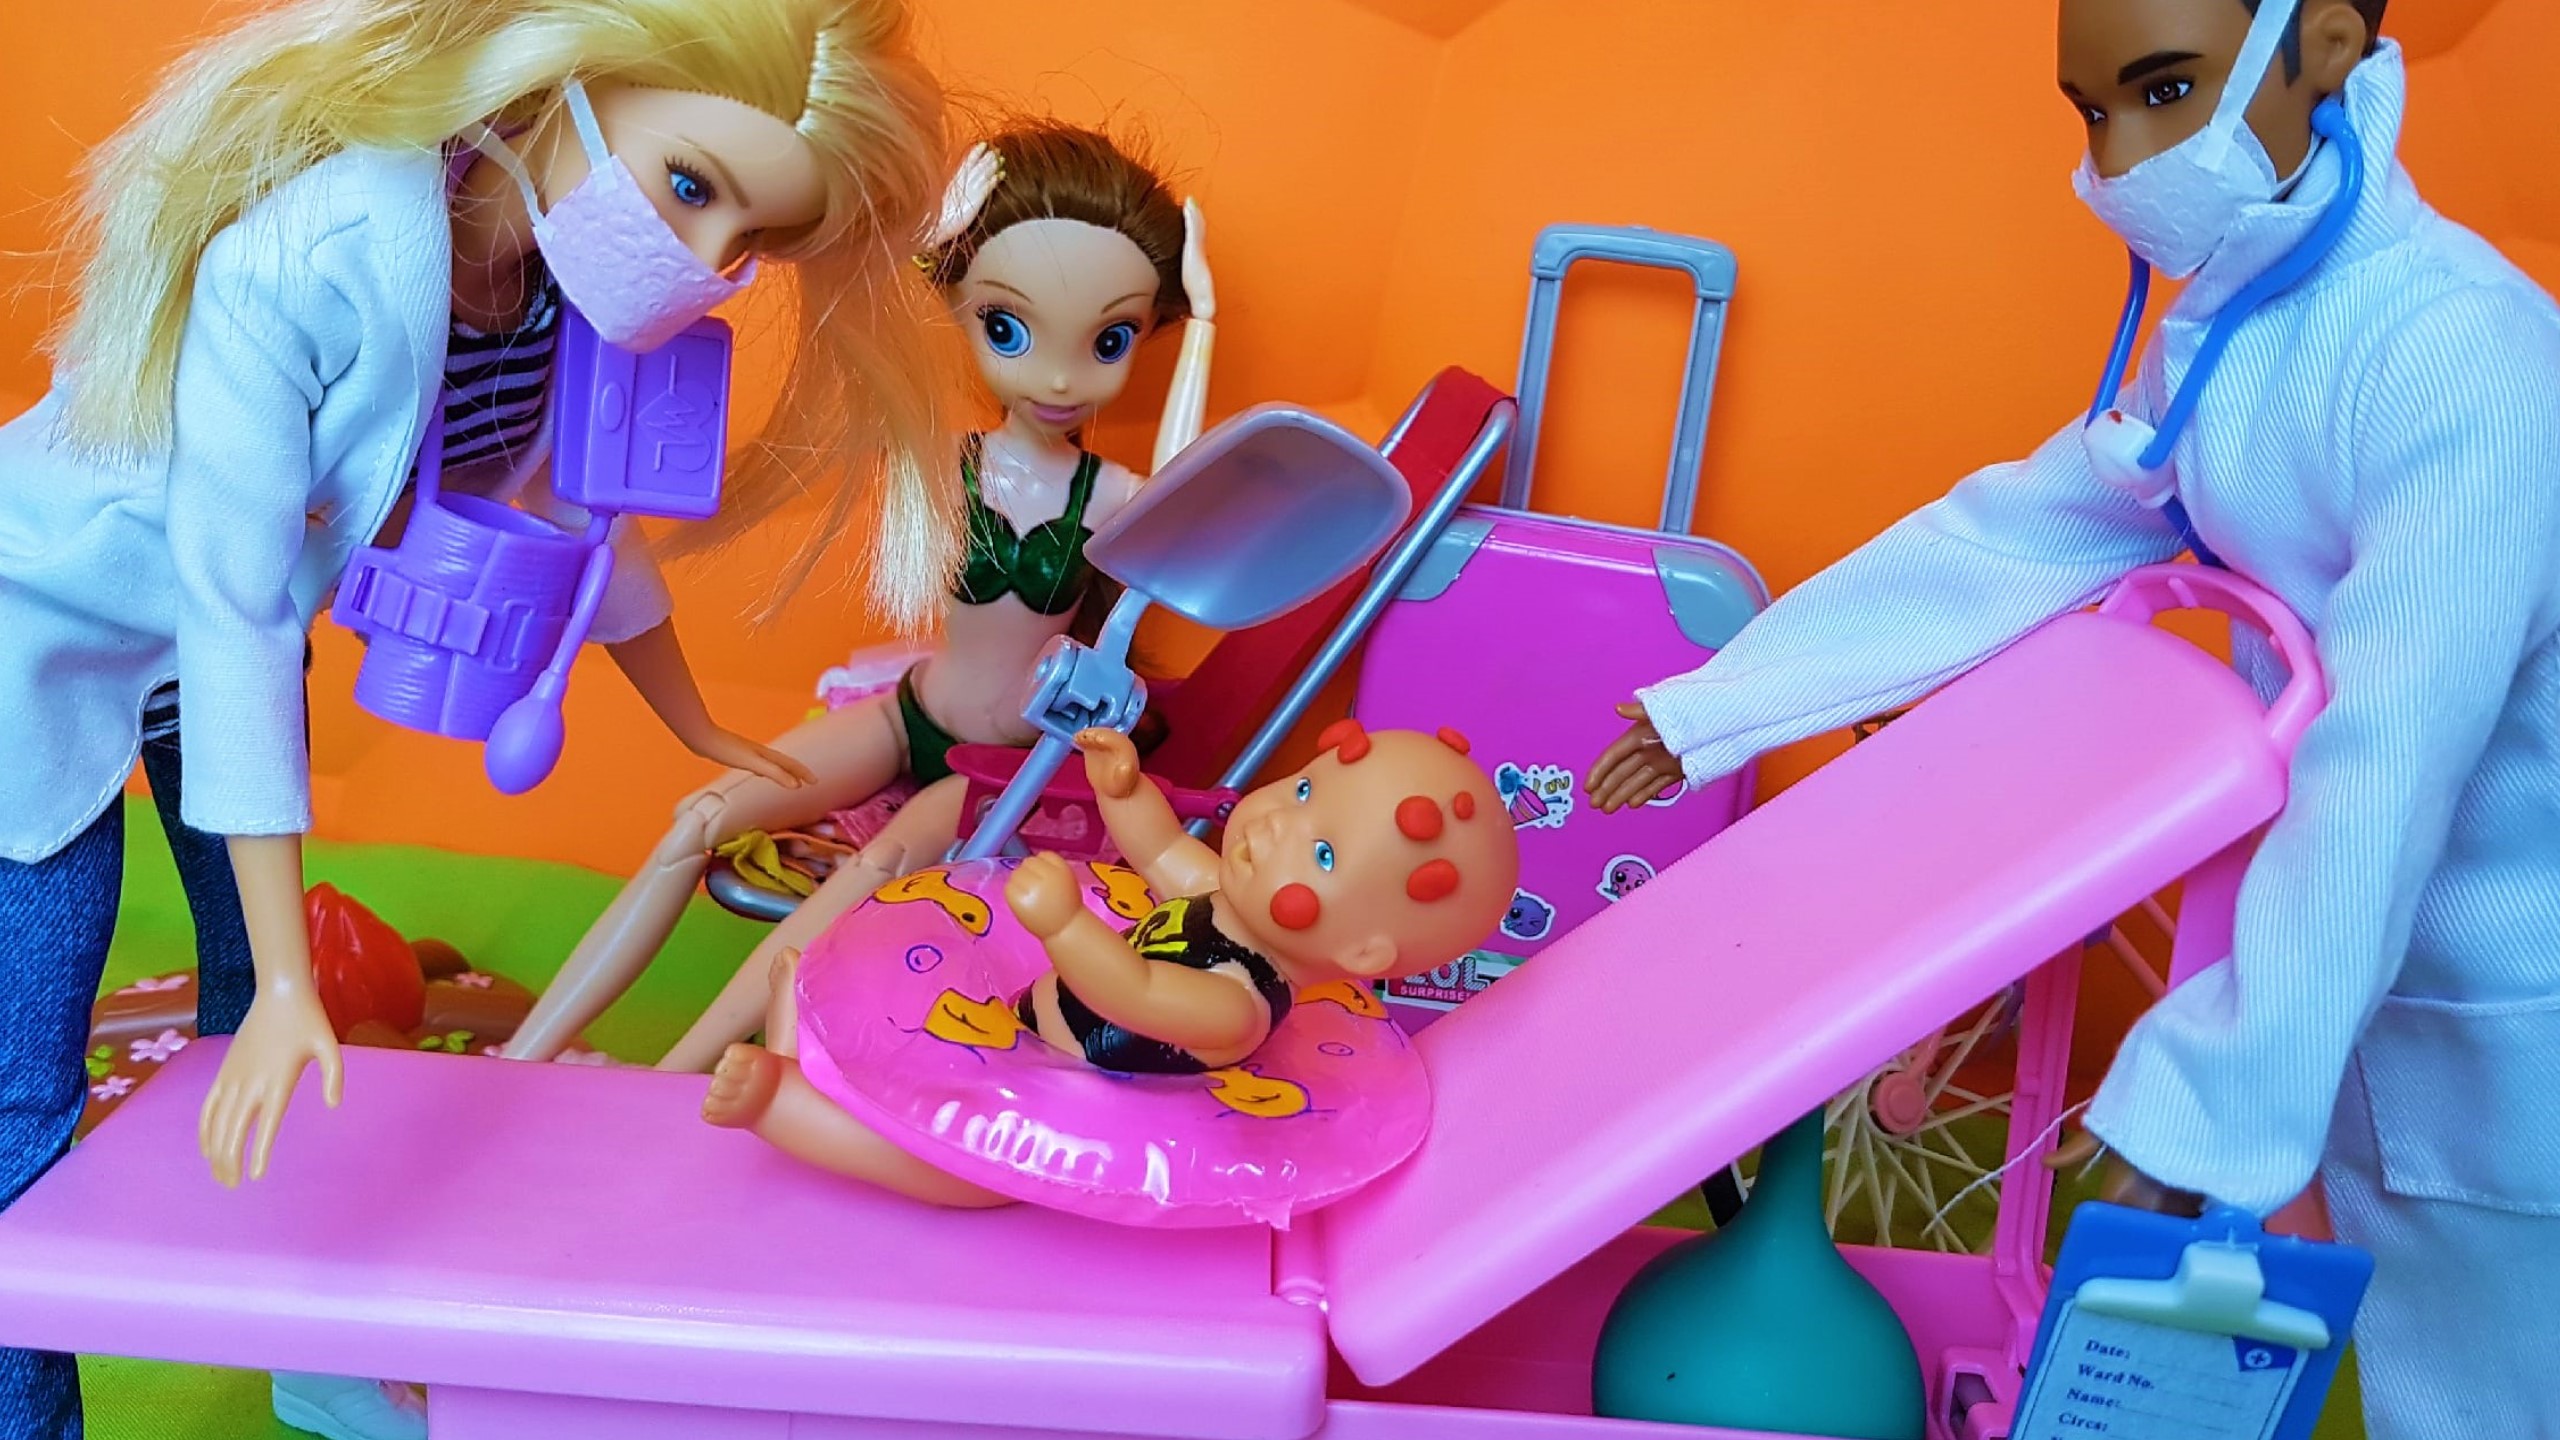 Куклы веселая семейка макс. Куклы Барби Катя и Макс весёлая семейка. ДАРИНЕЛКА ТВ Катя и Макс весёлая семейка куклы Барби.